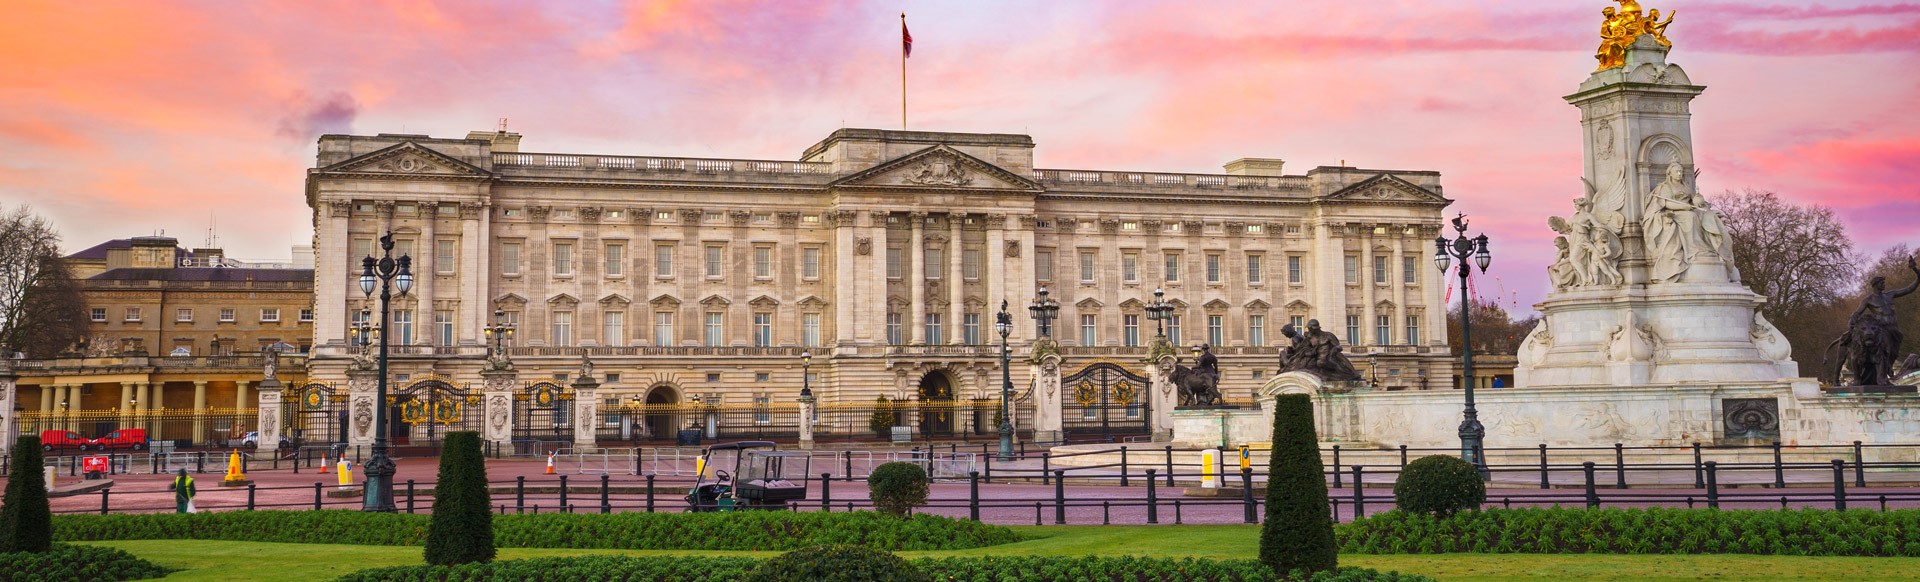 Buckingham Palace und die Victoria Memorial Gardens bei Sonnenuntergang